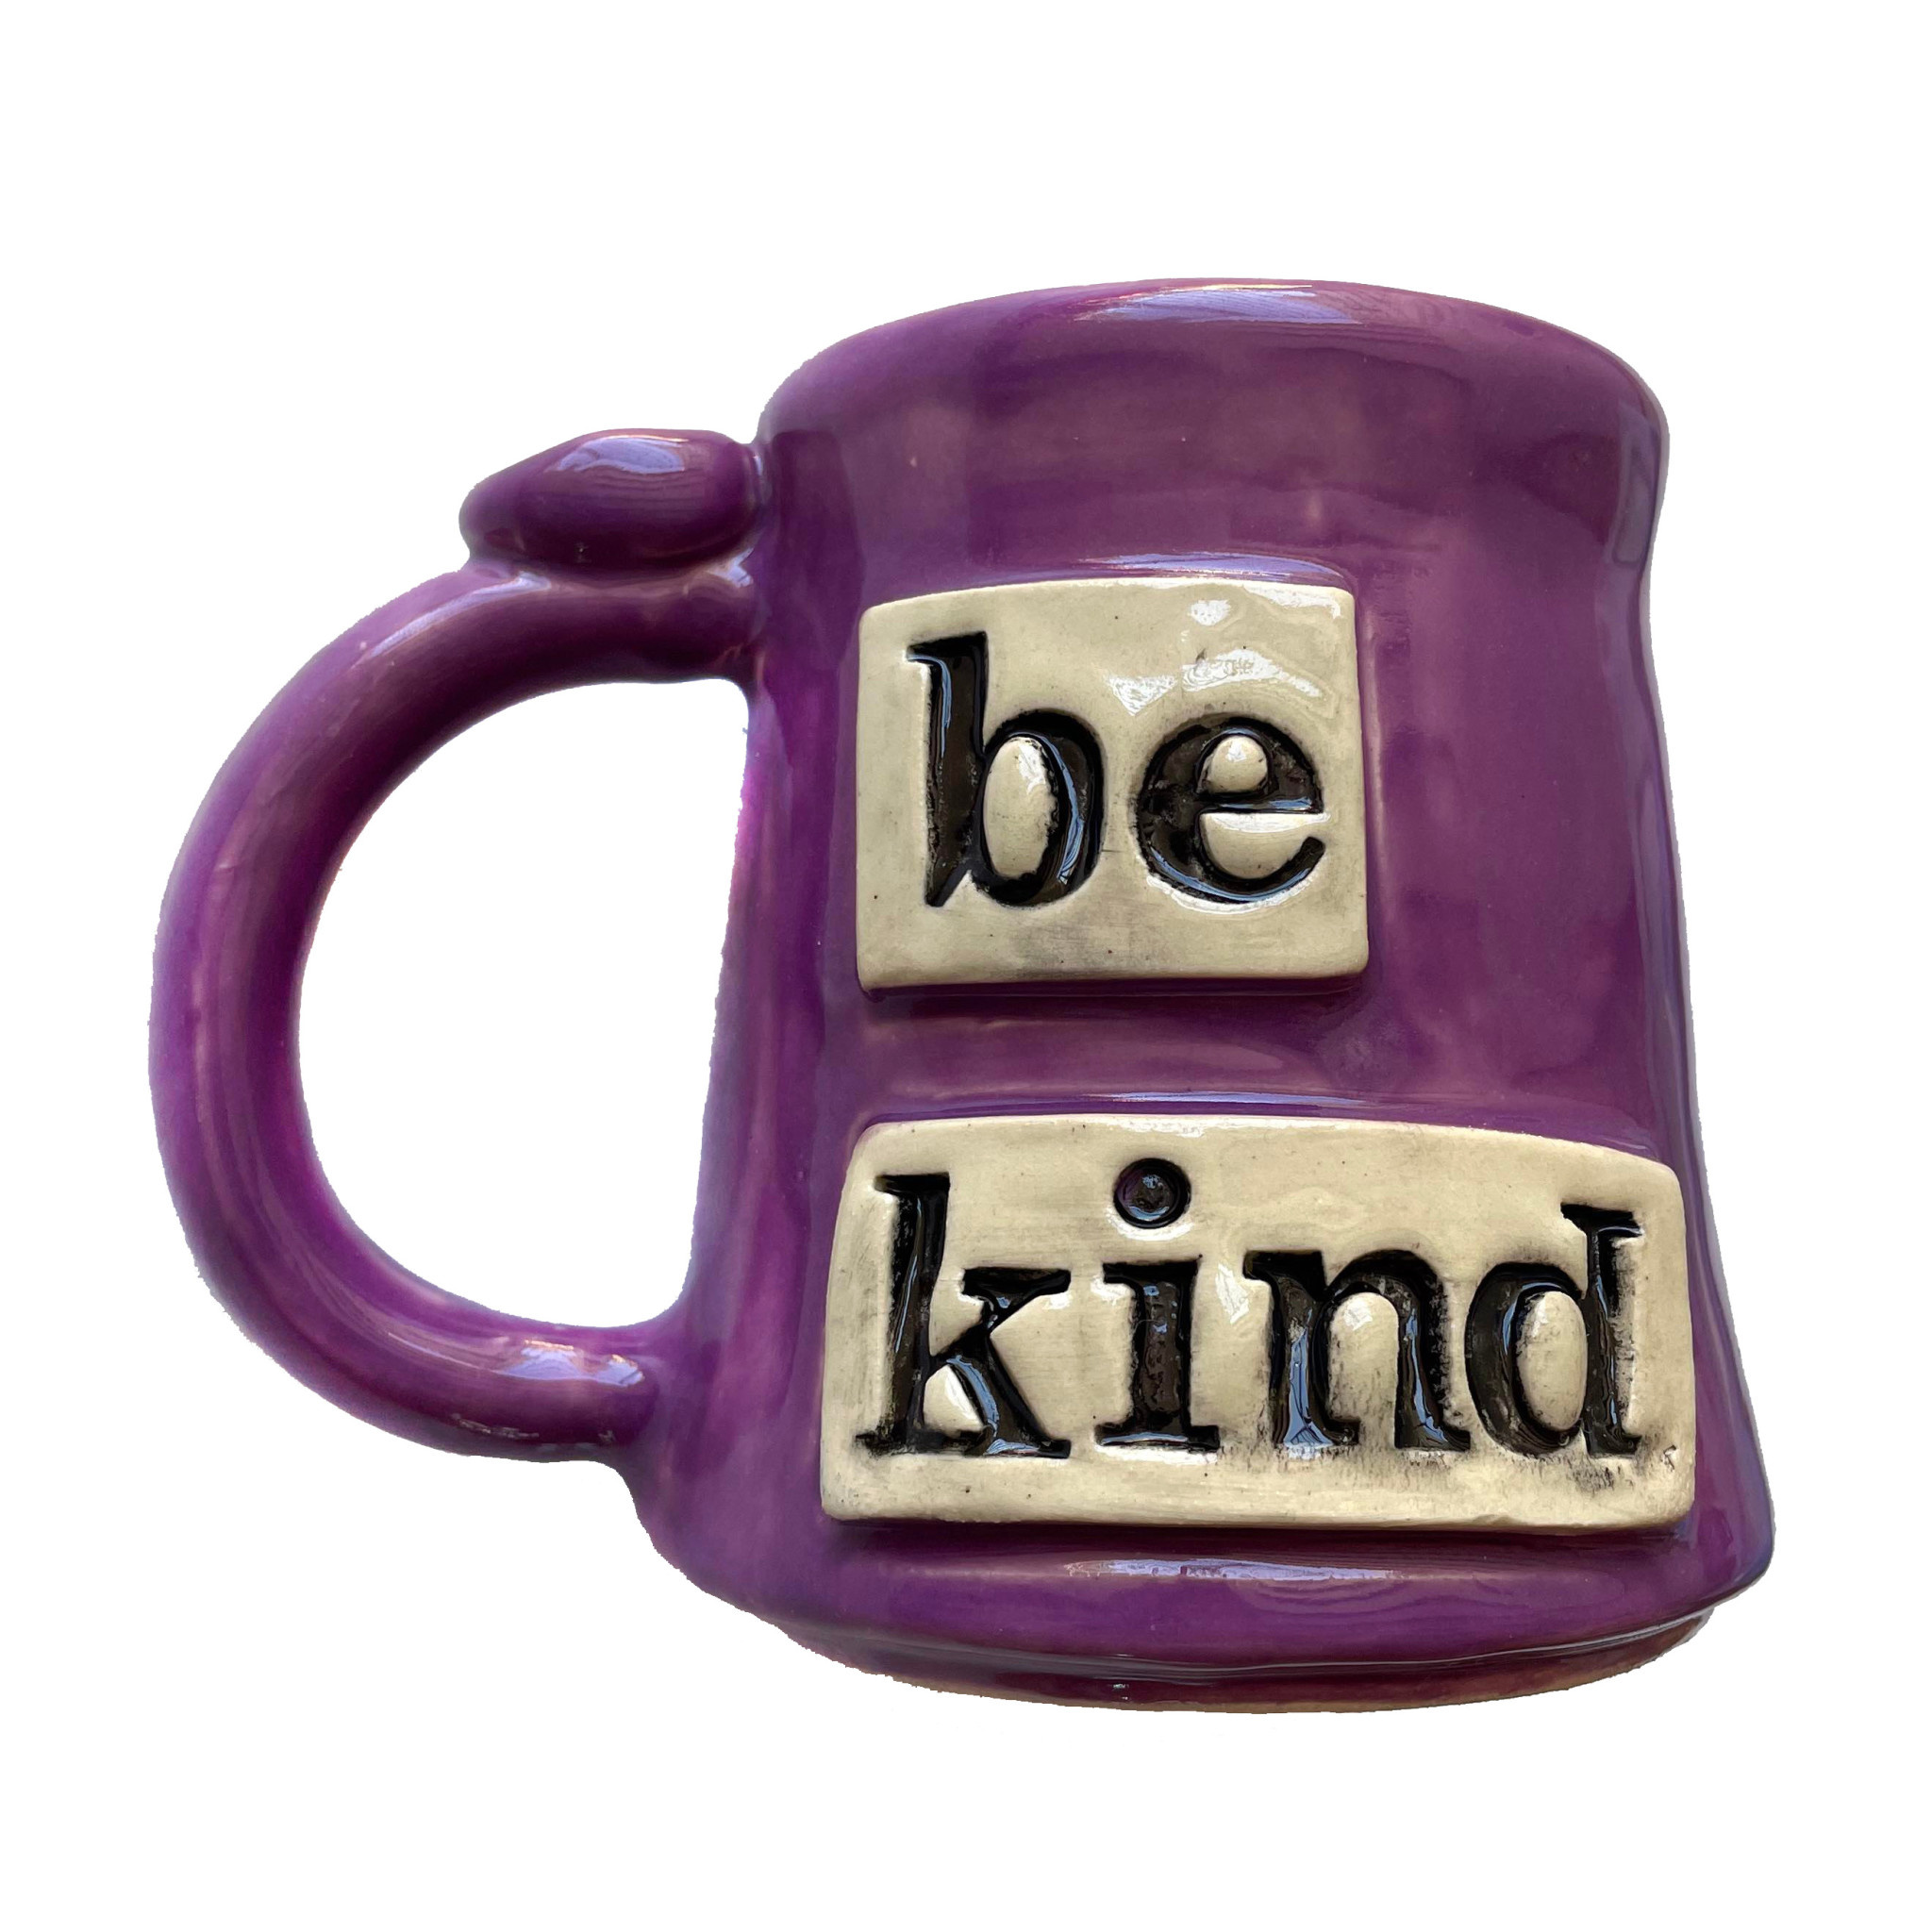 Crooked Tree Ceramics "Be Kind" Coffee Mug